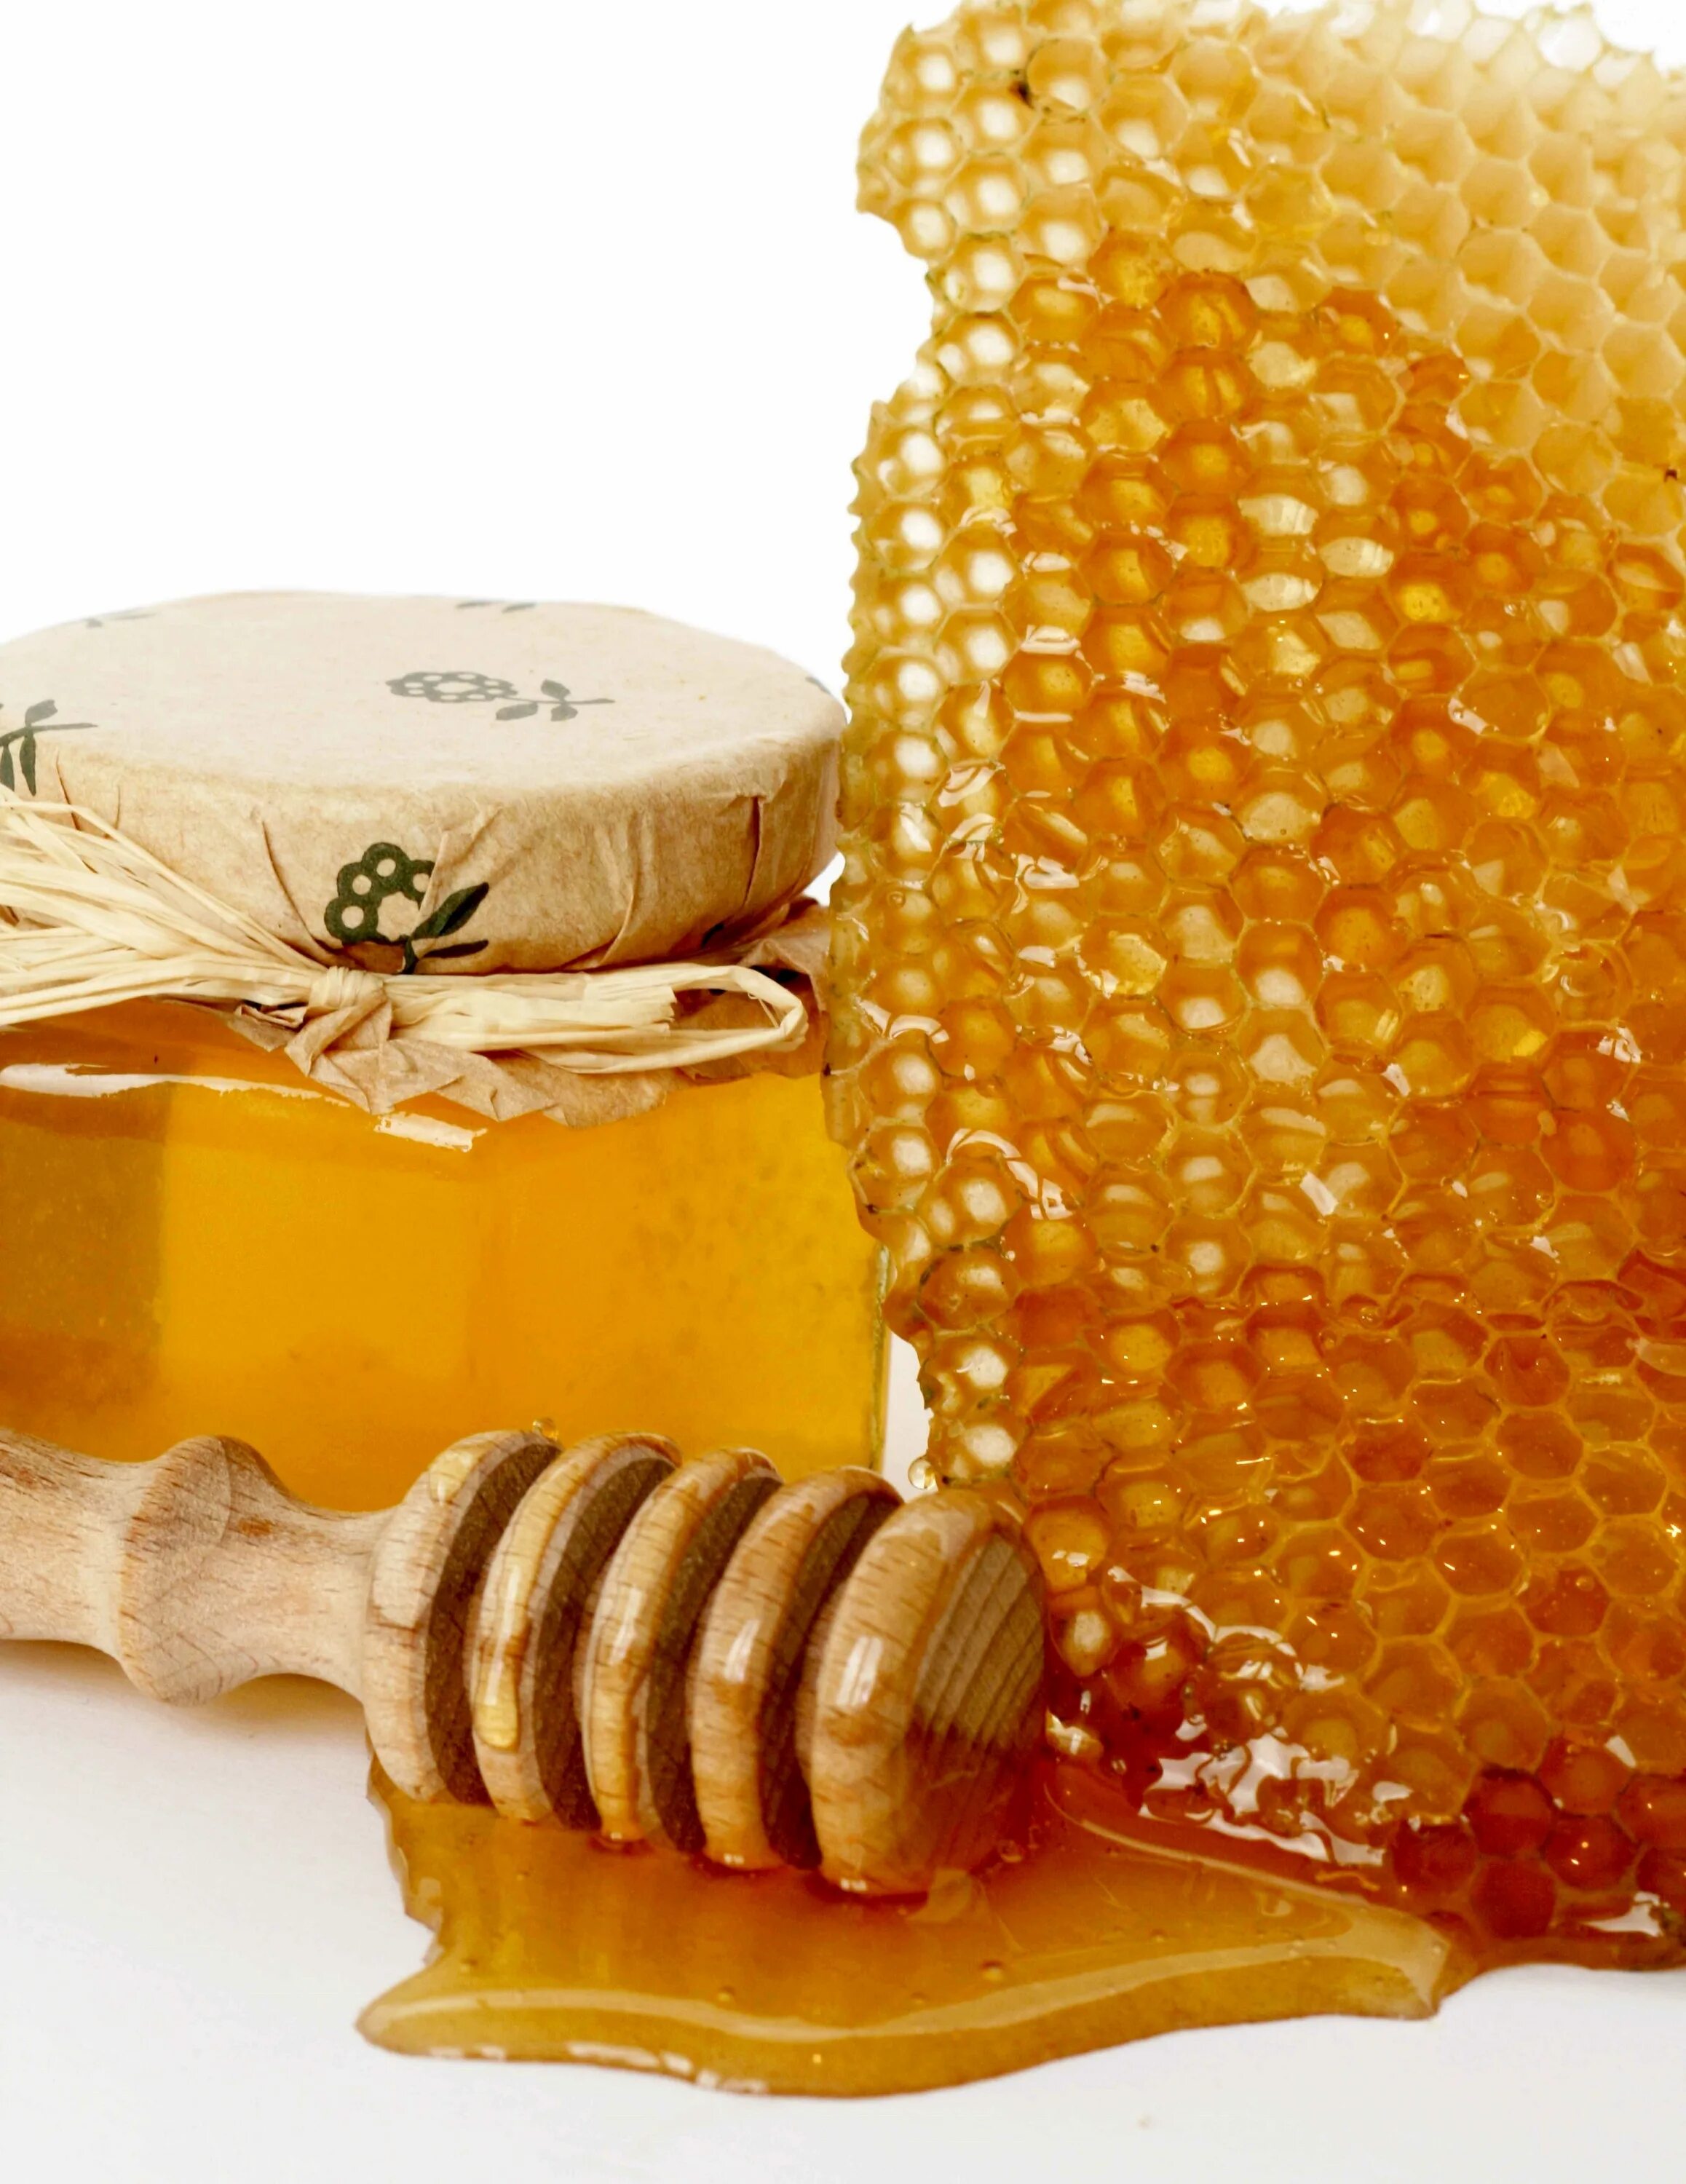 Соты меда. Пчелиный мёд. Мёд и продукты пчеловодства. Красивый мед. Купить хороший мед